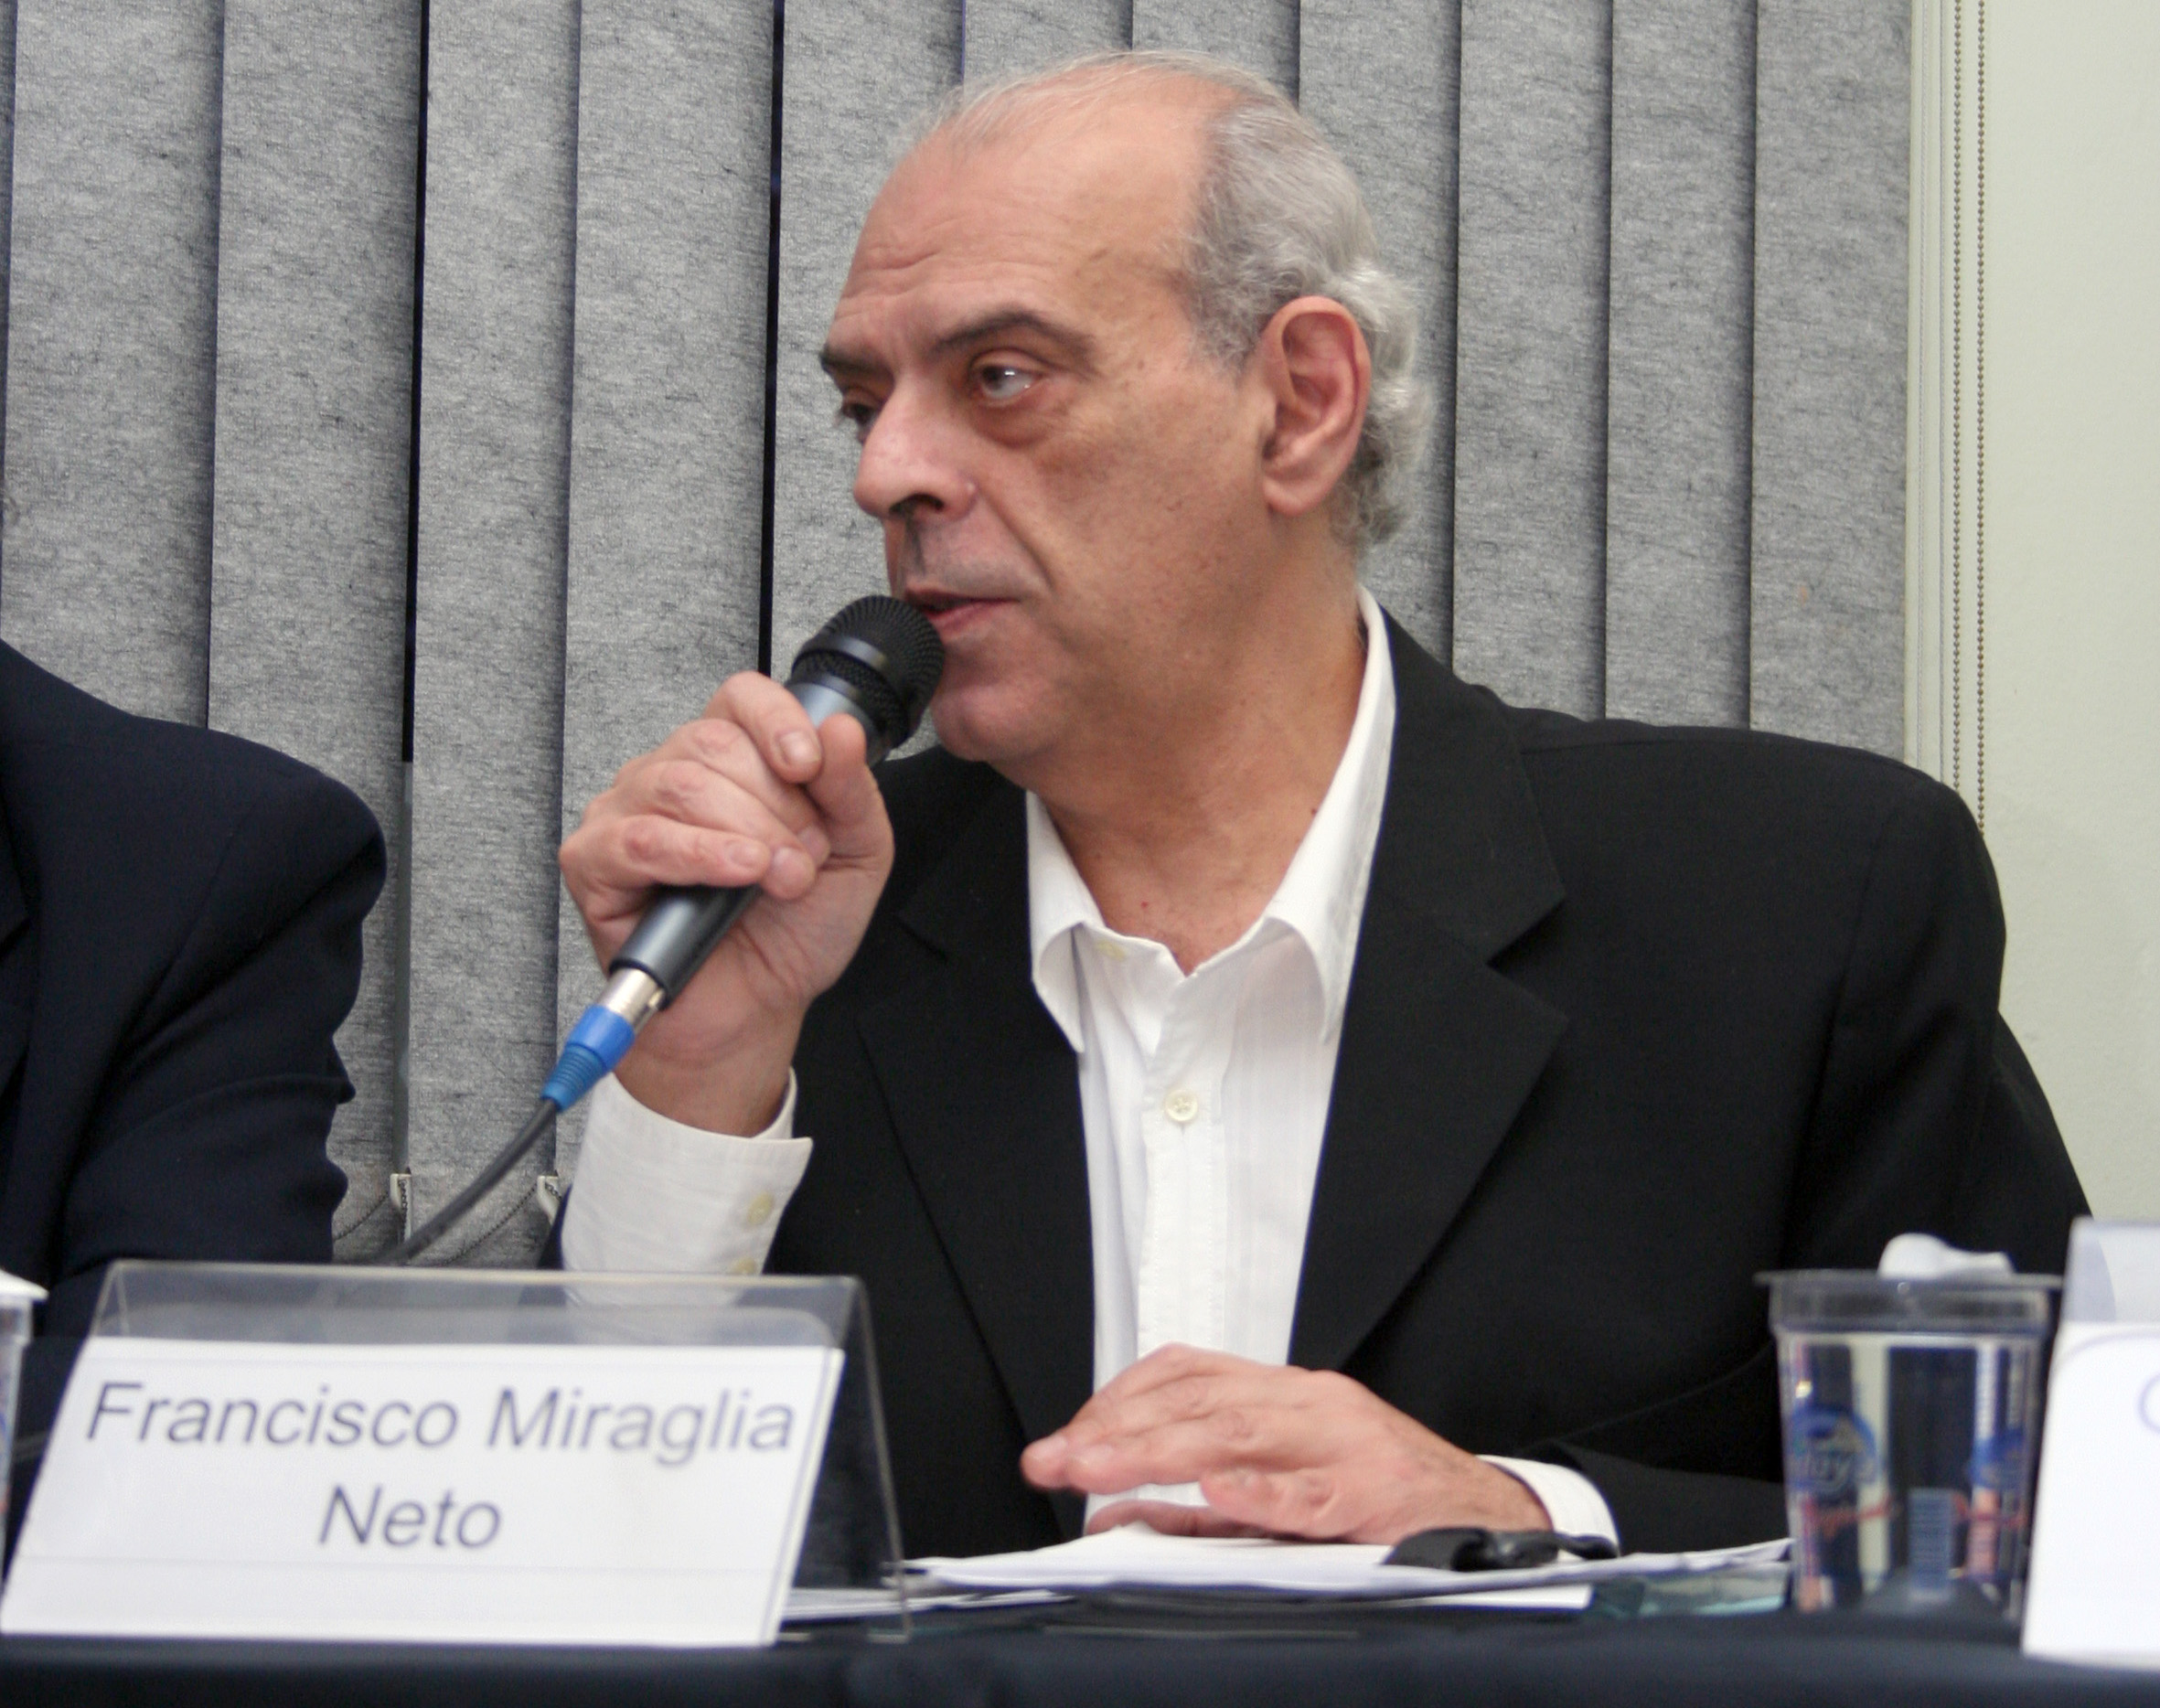 Francisco Miraglia Neto